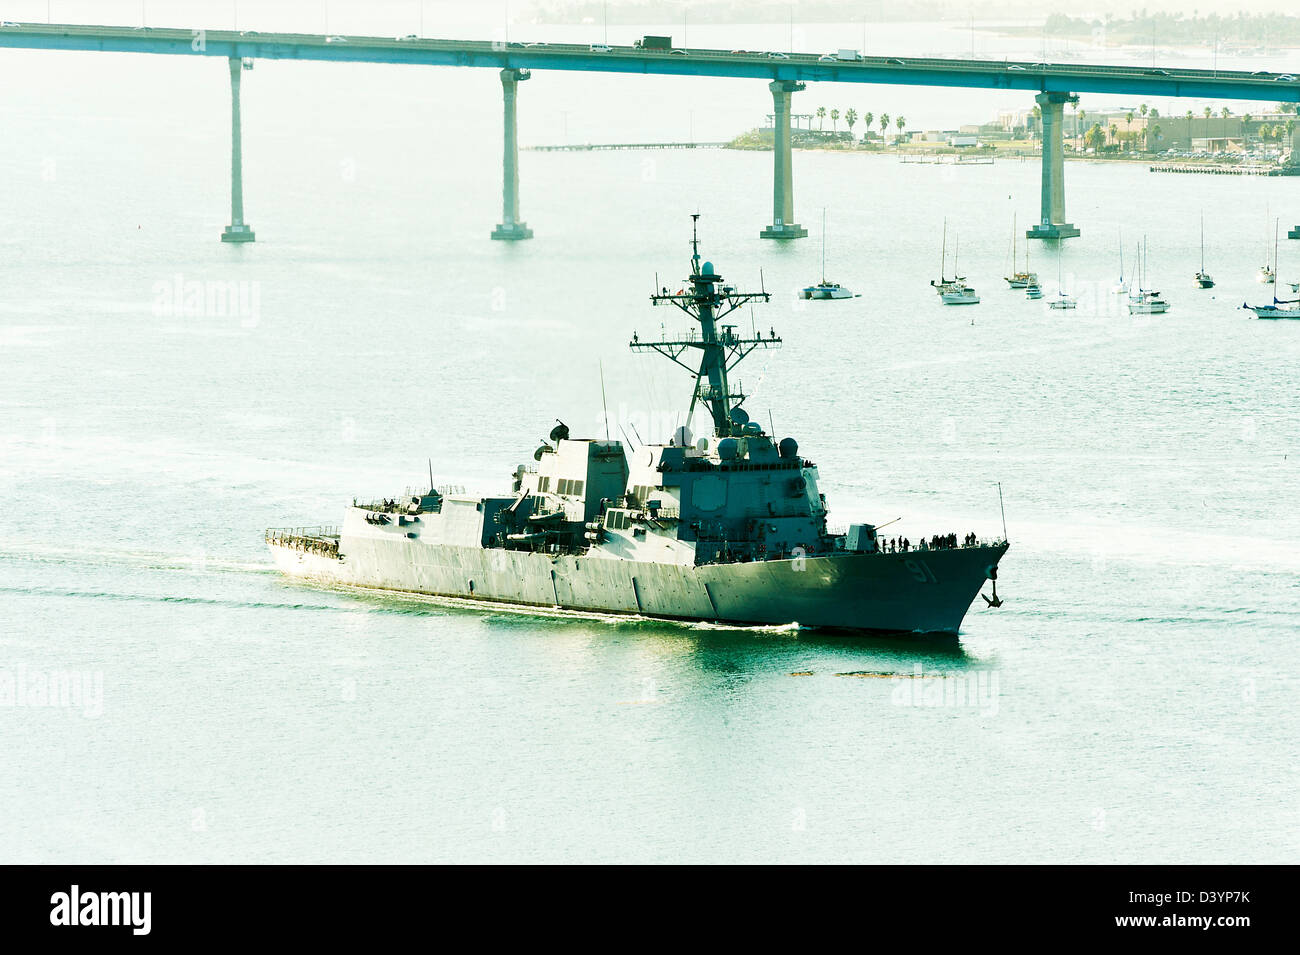 US Navy Arleigh Burke vuelo destructor de clase IIA Penant 91 USS Pinckney entrar en el puerto de San Diego, California, EE.UU. Foto de stock